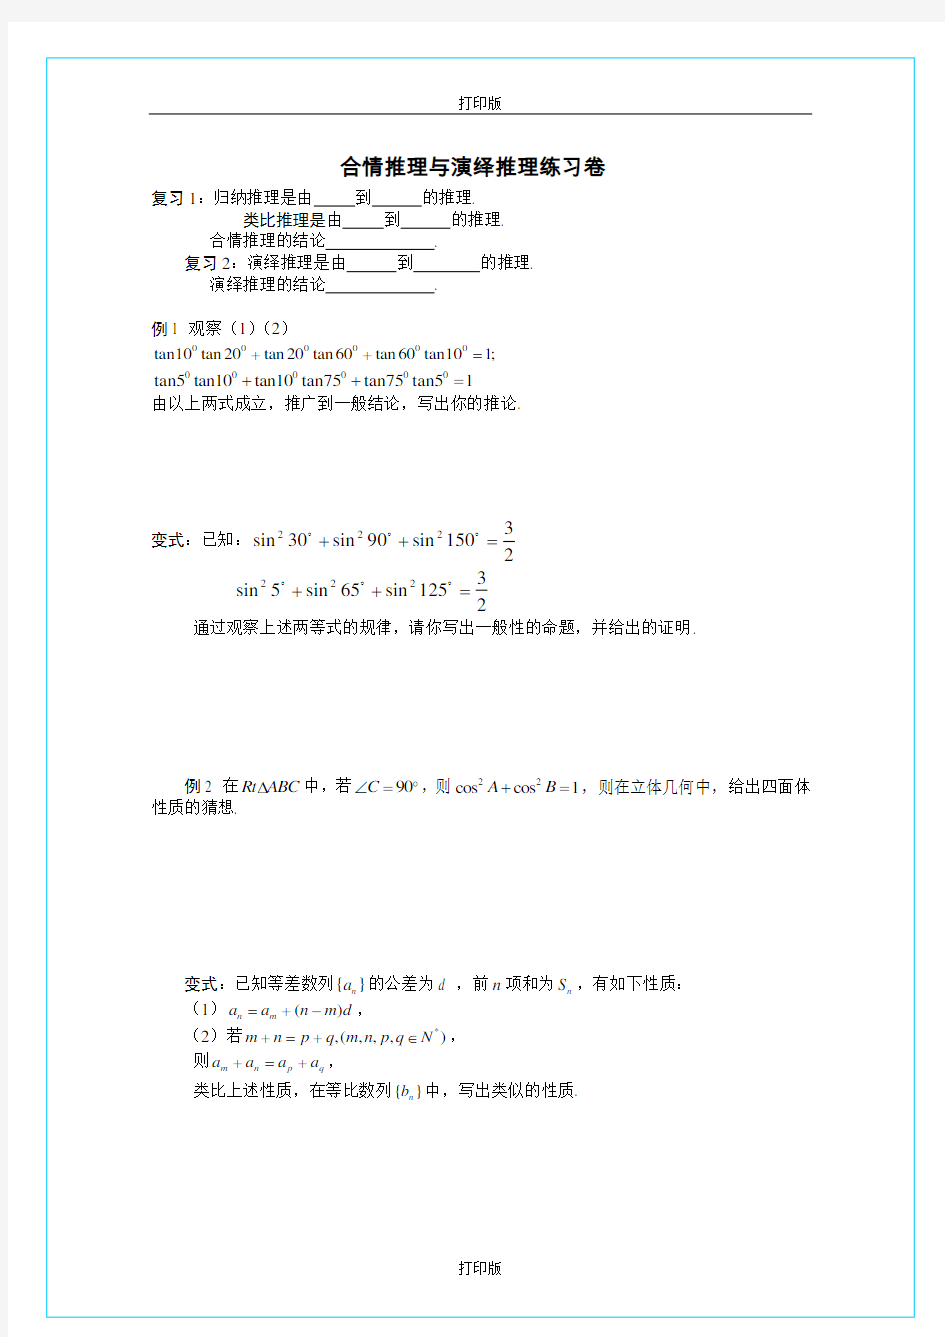 苏教版数学高二《2.1 合情推理与演绎推理》同步测试 江苏省徐州市王杰中学